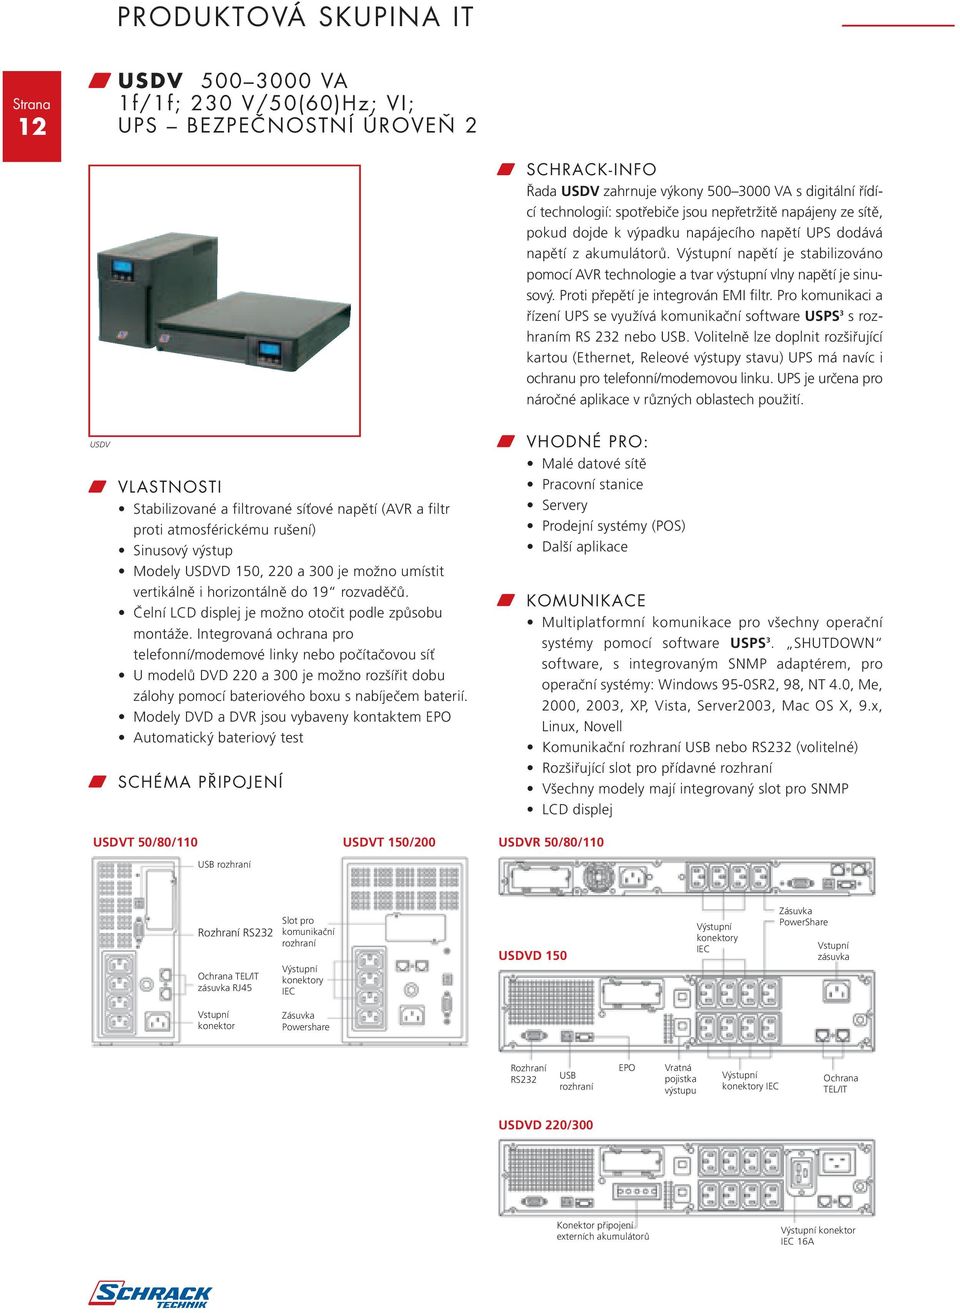 Proti přepětí je integrován EMI filtr. Pro komunikaci a řízení UPS se využívá komunikační software USPS 3 s rozhraním RS 232 nebo USB.